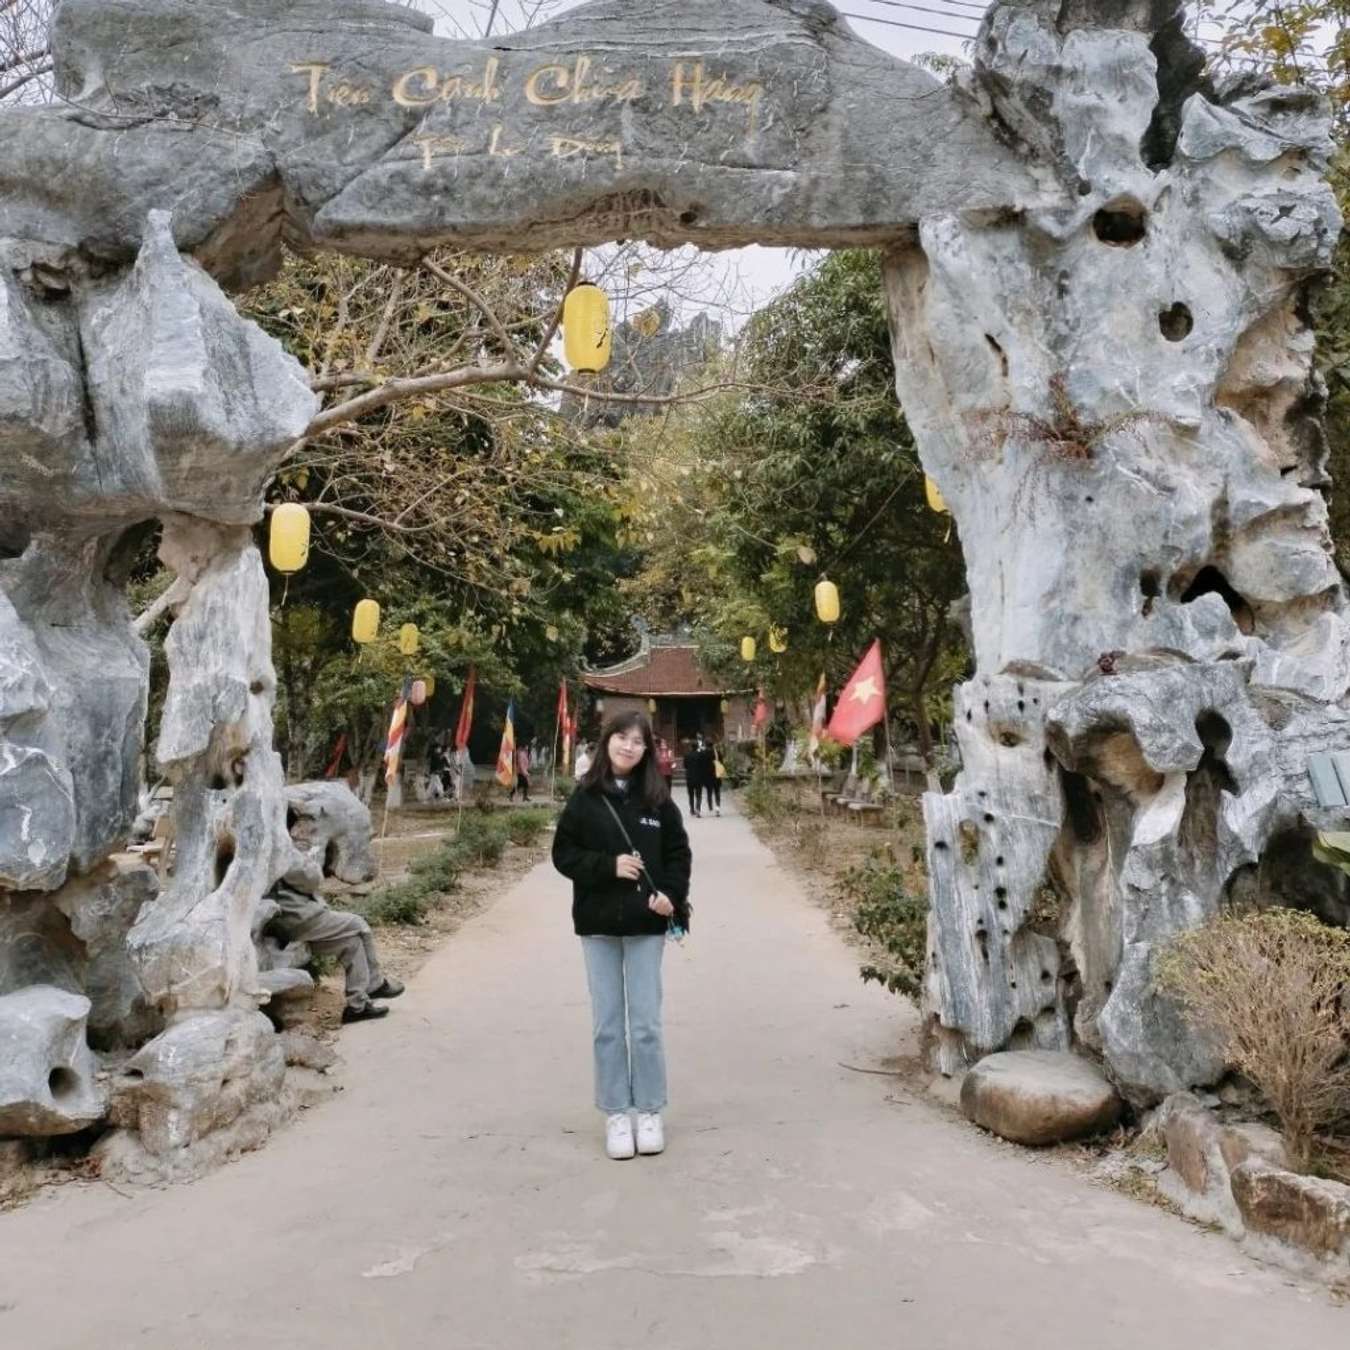 Chùa Hang Đồng Hỷ Thái Nguyên một điểm du lịch tâm linh hấp dẫn du khách. @thuysngan_01